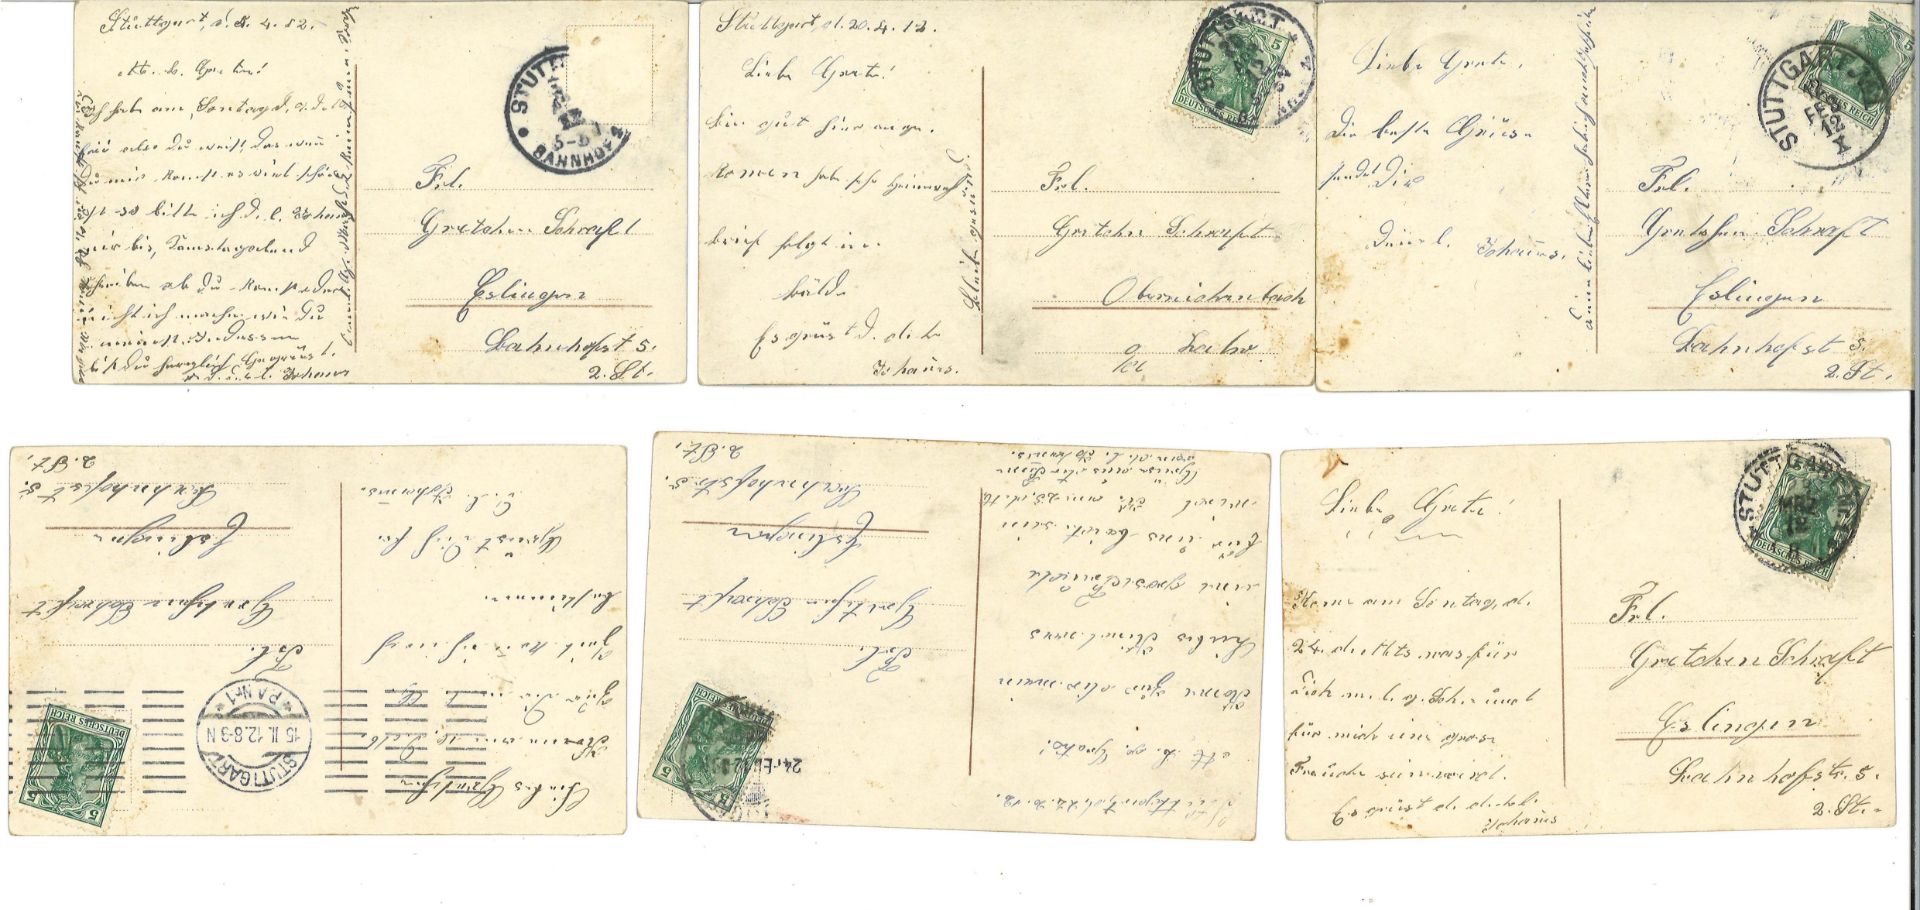 Postkartenserie von 1912, insgesamt 6 Stück. Gedicht: Müde kehrt ein Wandersmann zurück .... Alle